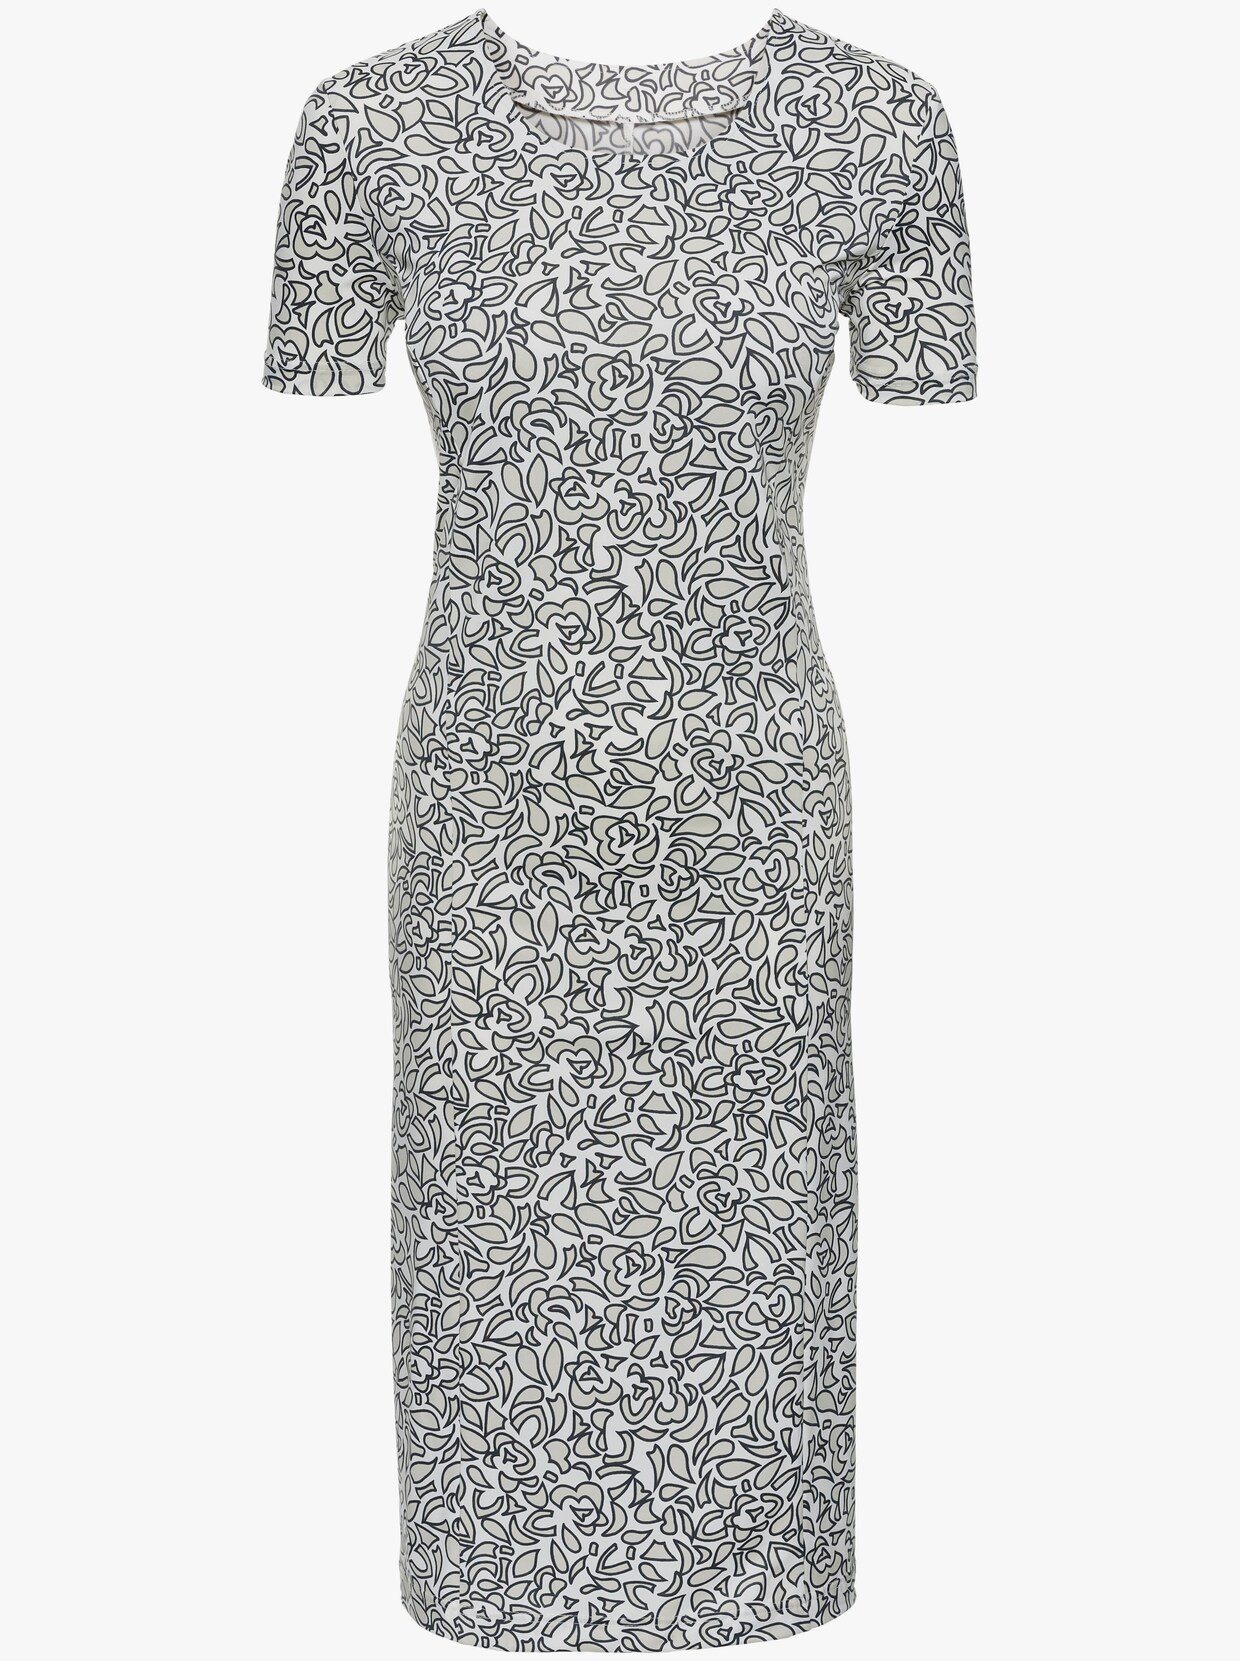 Klänning med tryck - grå+vit, tryckt